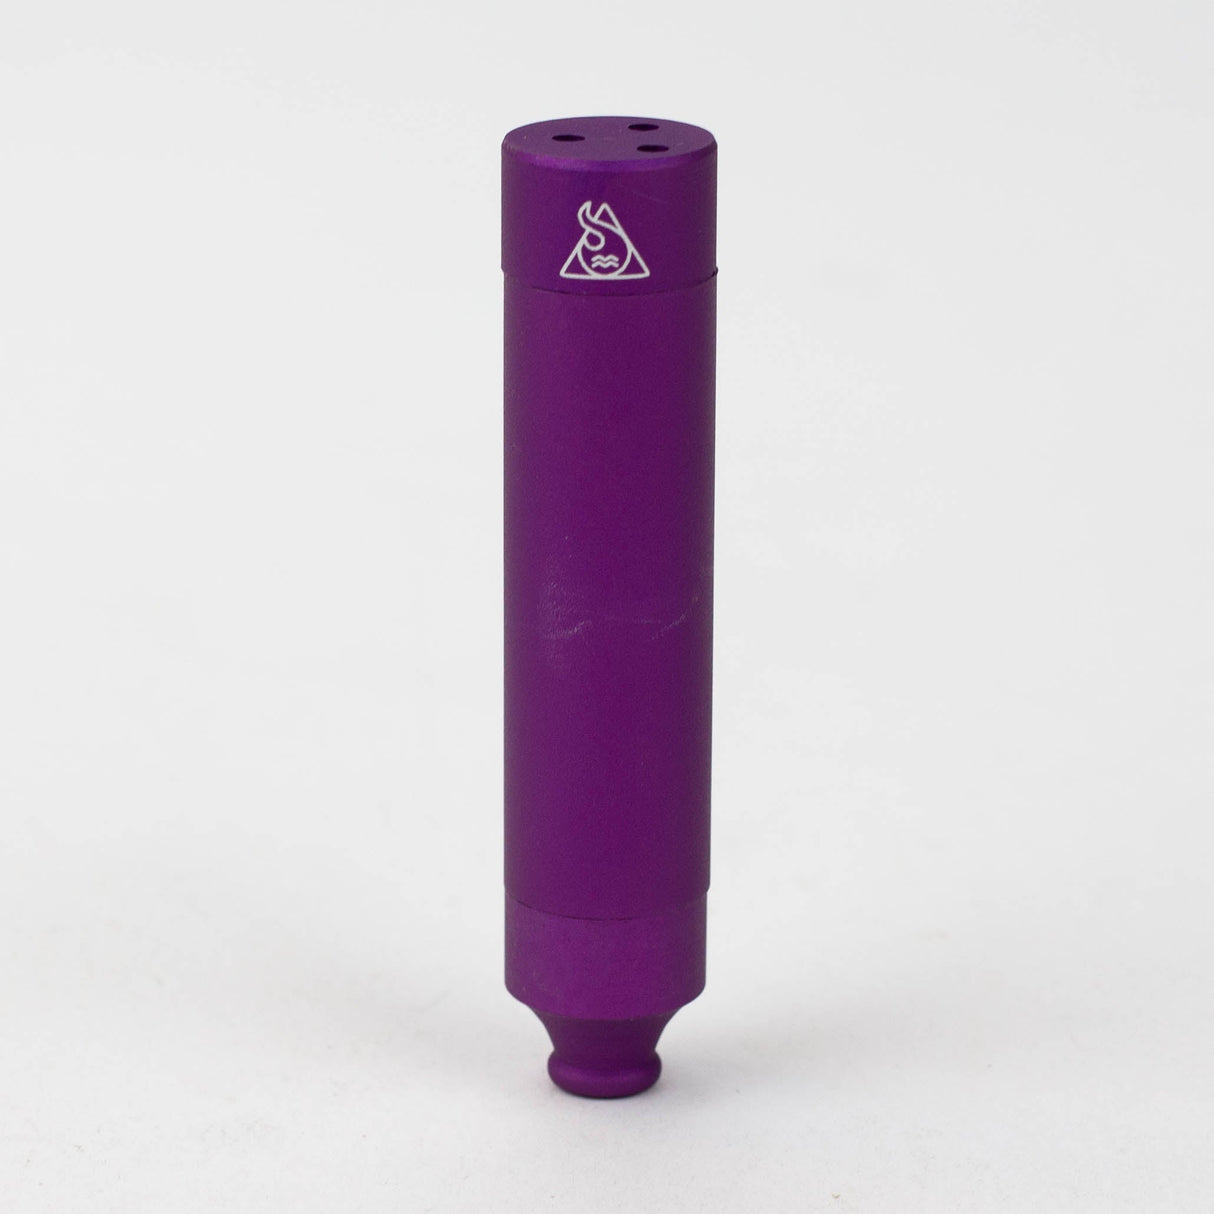 Squadafum-Metal Pipe Heat Cooler-Purple - One Wholesale